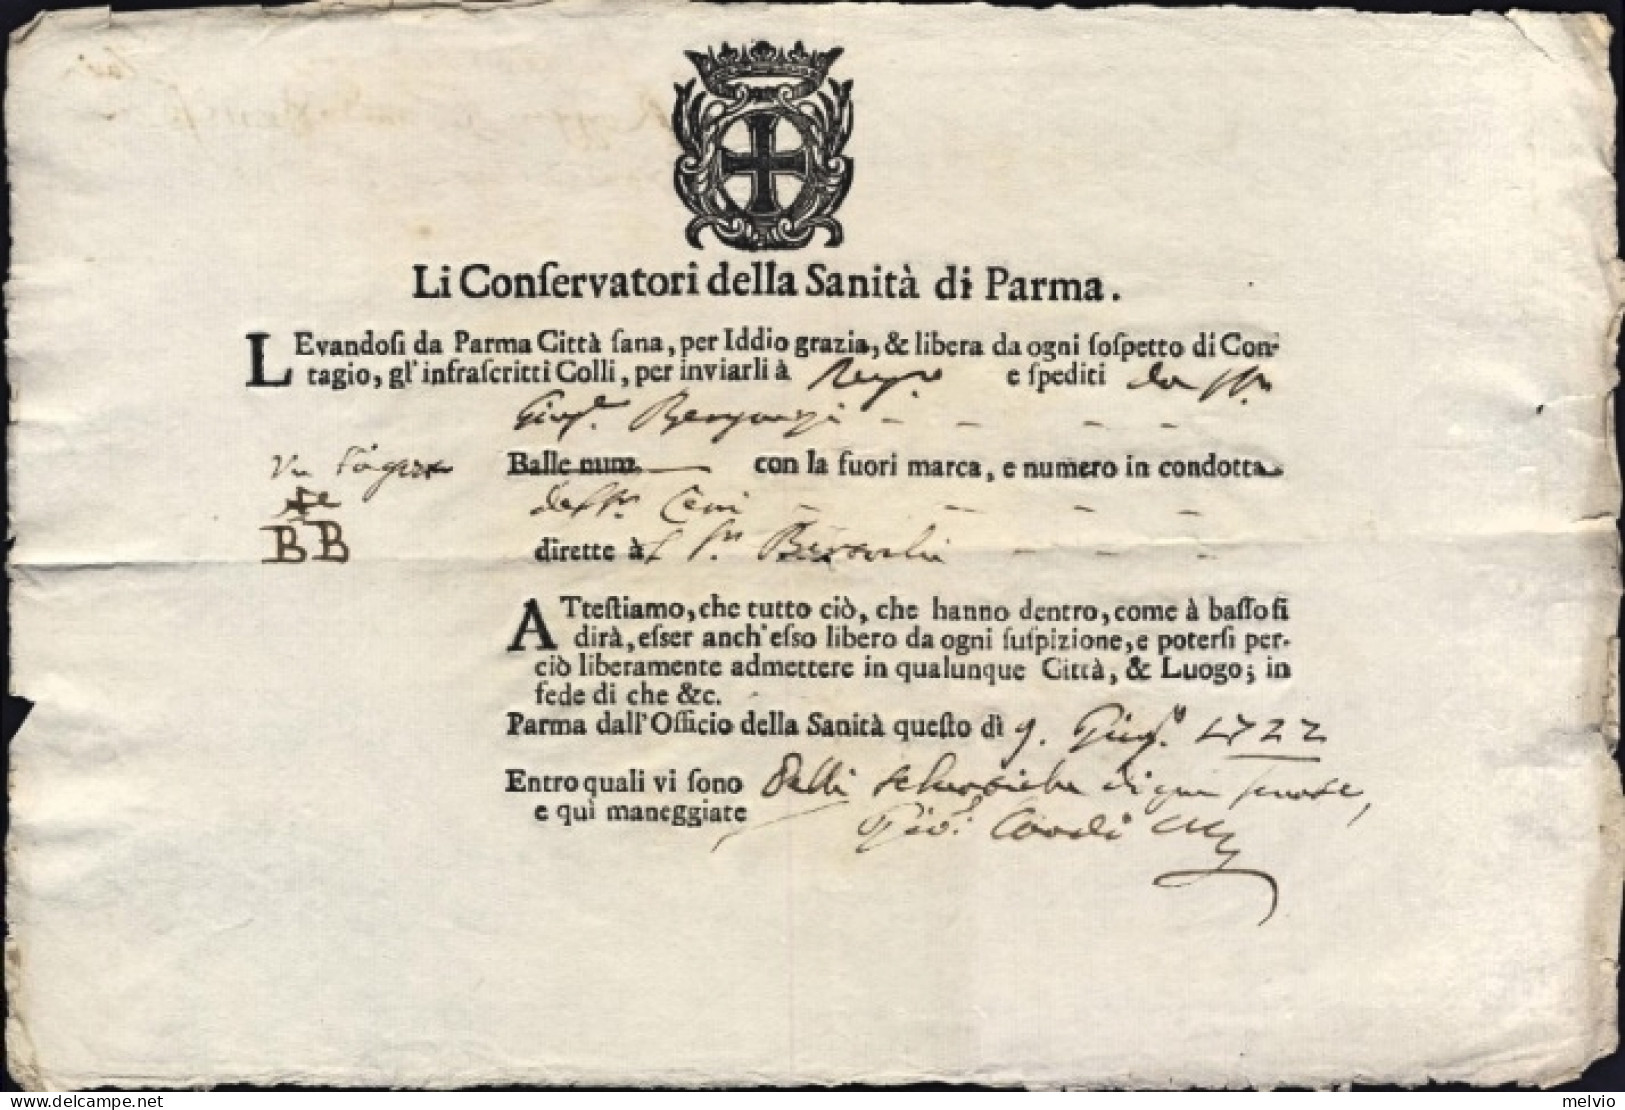 1722-Parma Fede Di Sanita' Rilasciata Il 9 Giugno Dai Conservatori Della Sanita' - Historical Documents